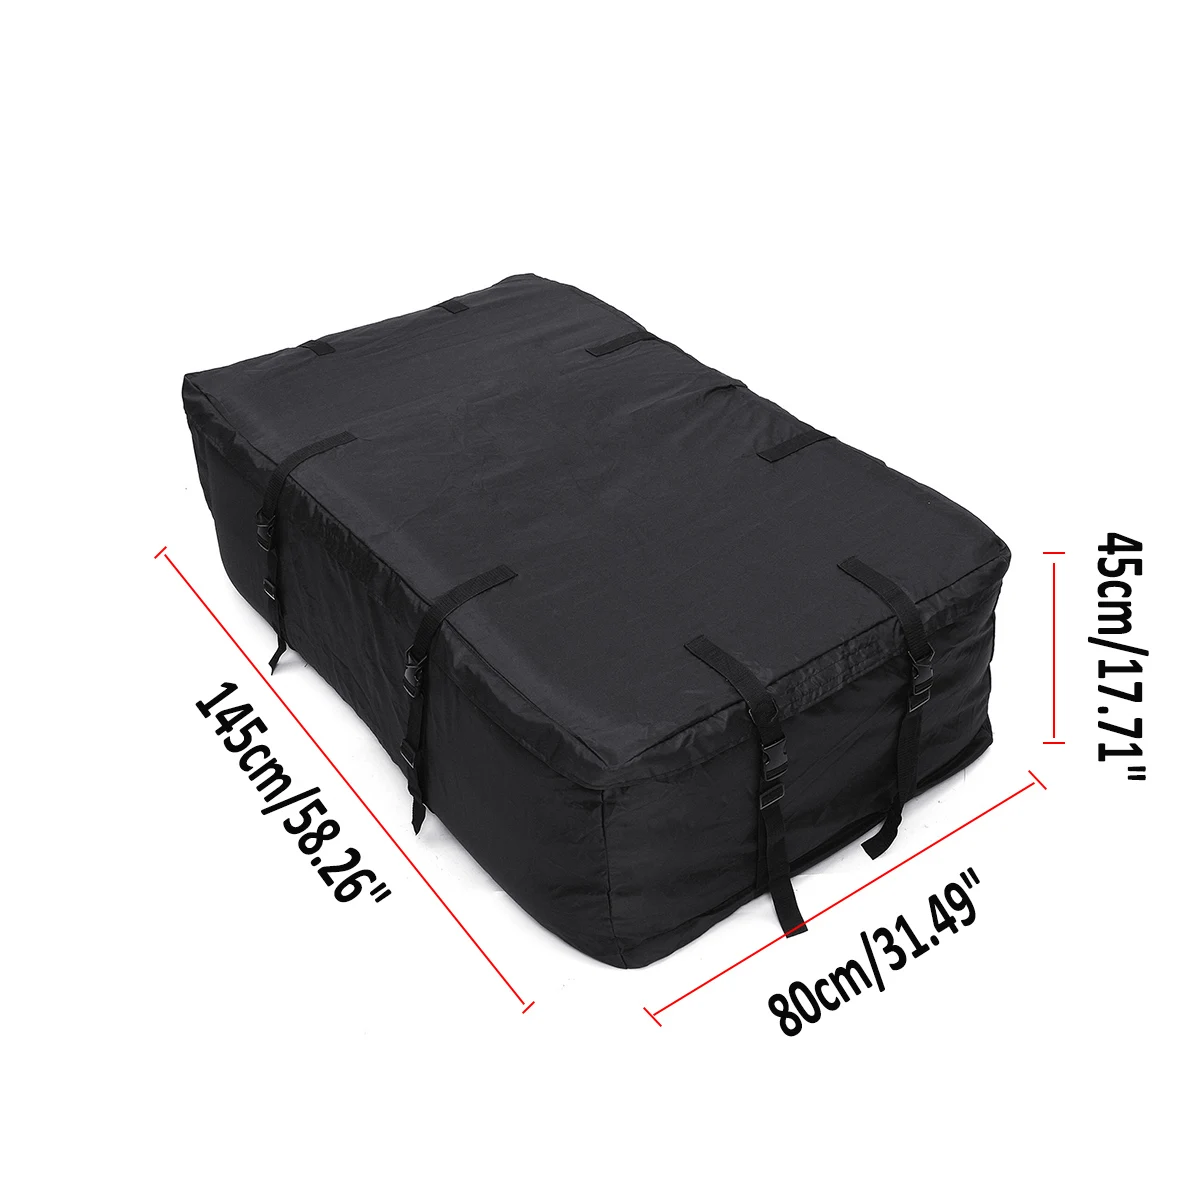 145x80x45 см водонепроницаемый усиленный багажник на крышу автомобиля хранение, портфель для хранения багажа груза для транспортных средств с рельсами на крышу